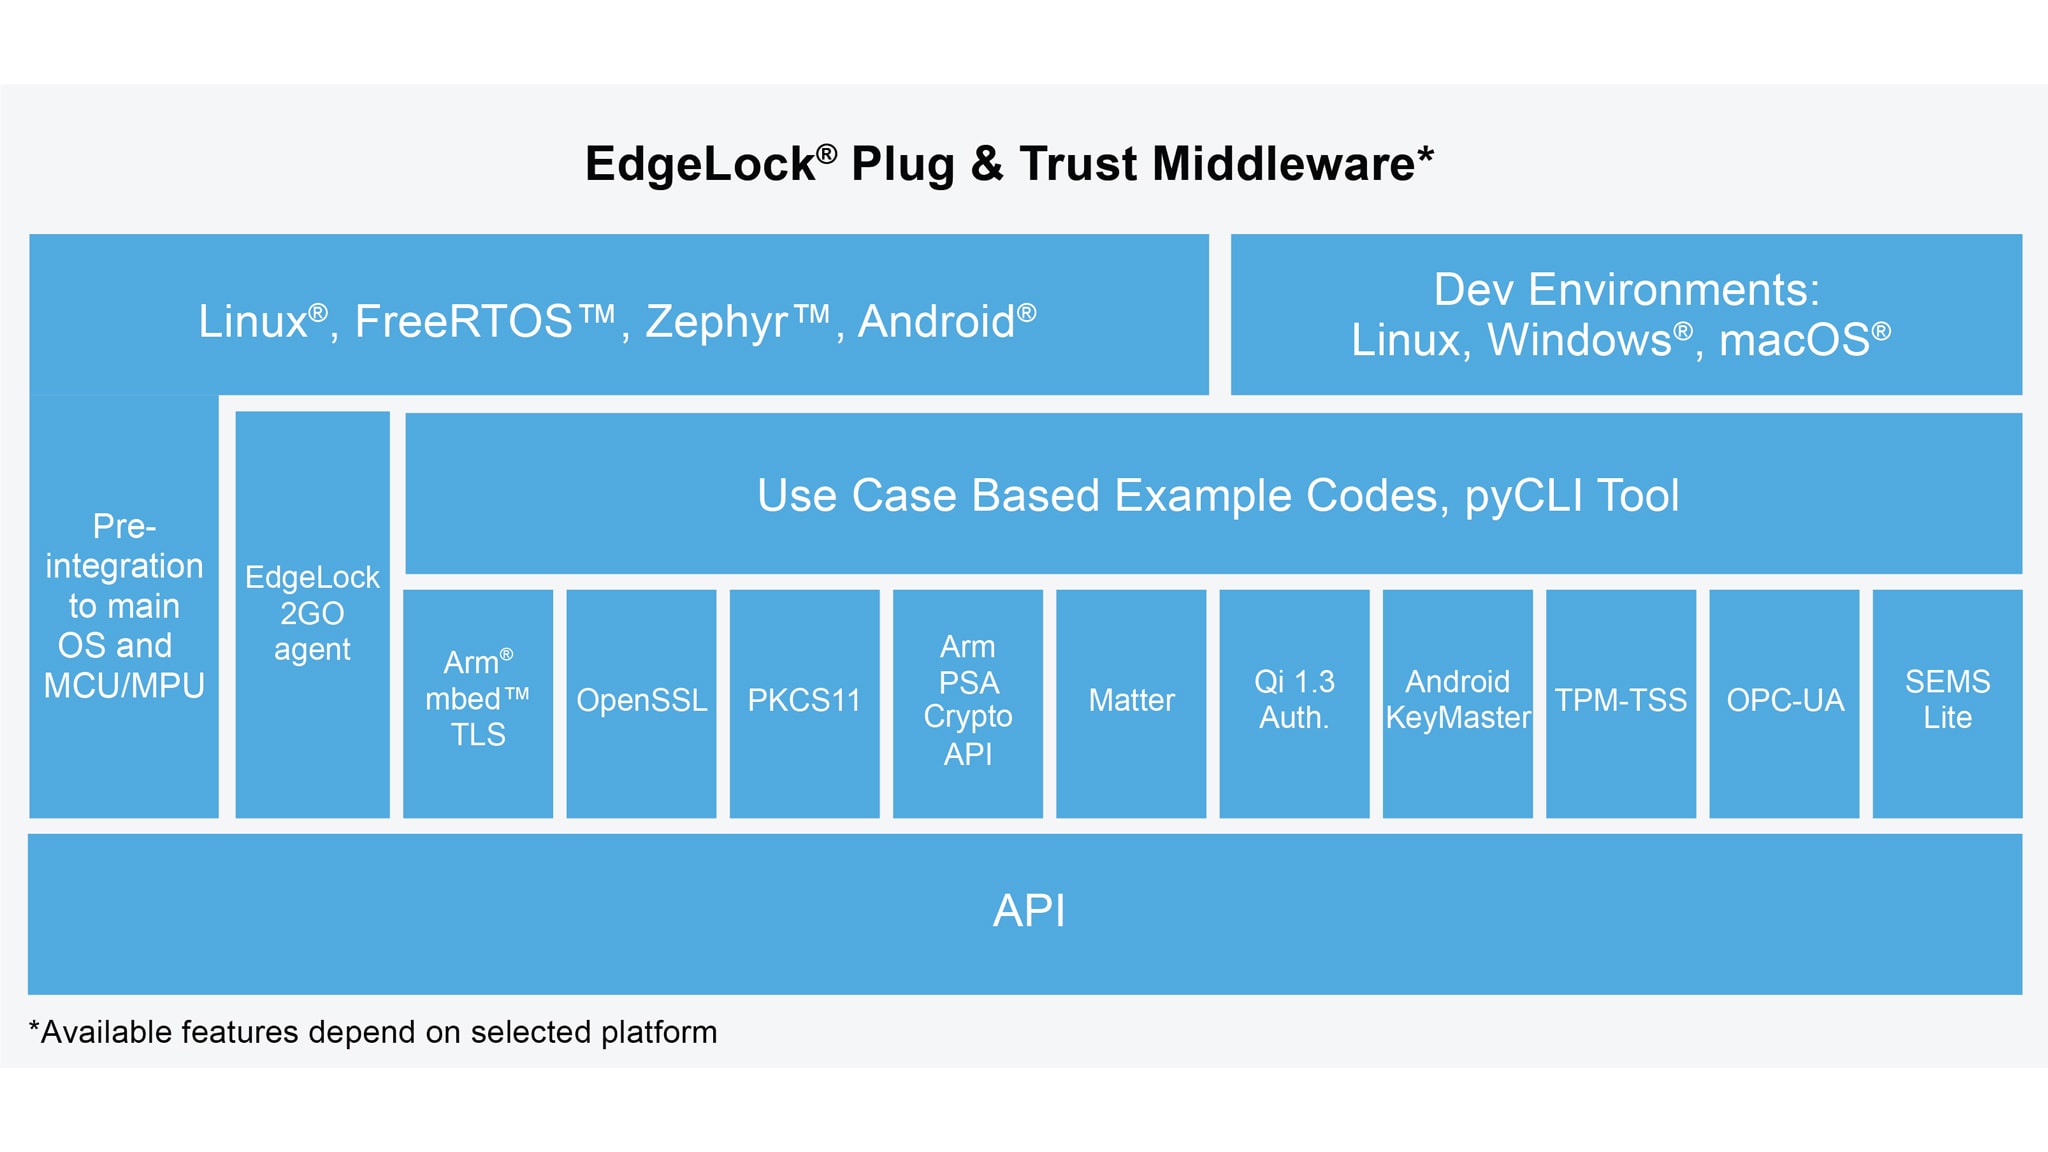 EdgeLock Plug & Trust Middleware